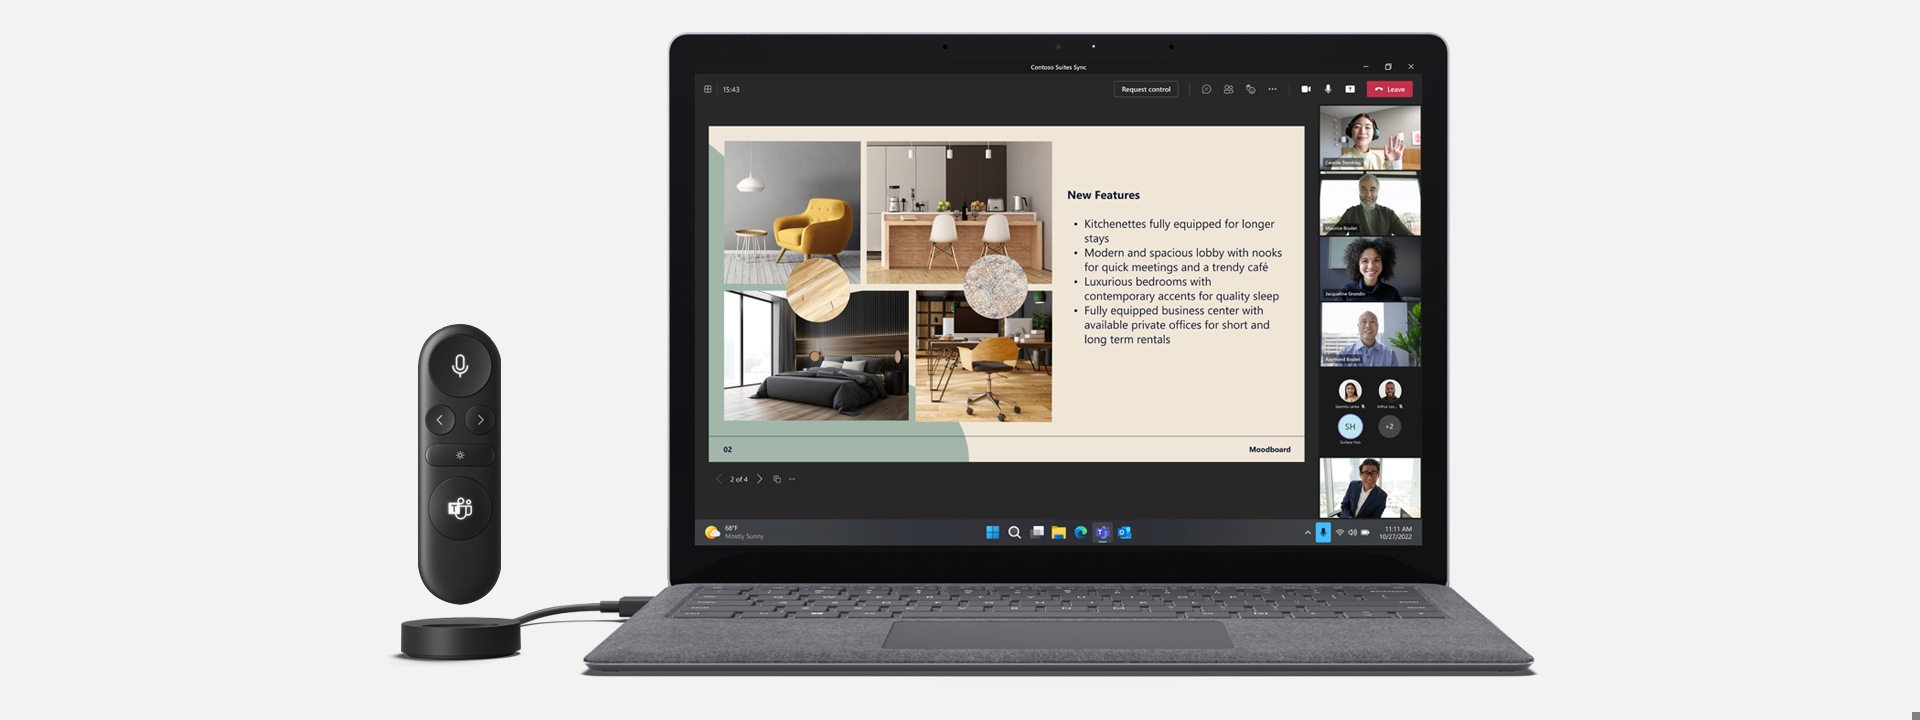 جهاز Microsoft Presenter Plus معروضًا بجوار جهاز Surface وتظهر على الشاشة مكالمة عبر برنامج Microsoft Teams